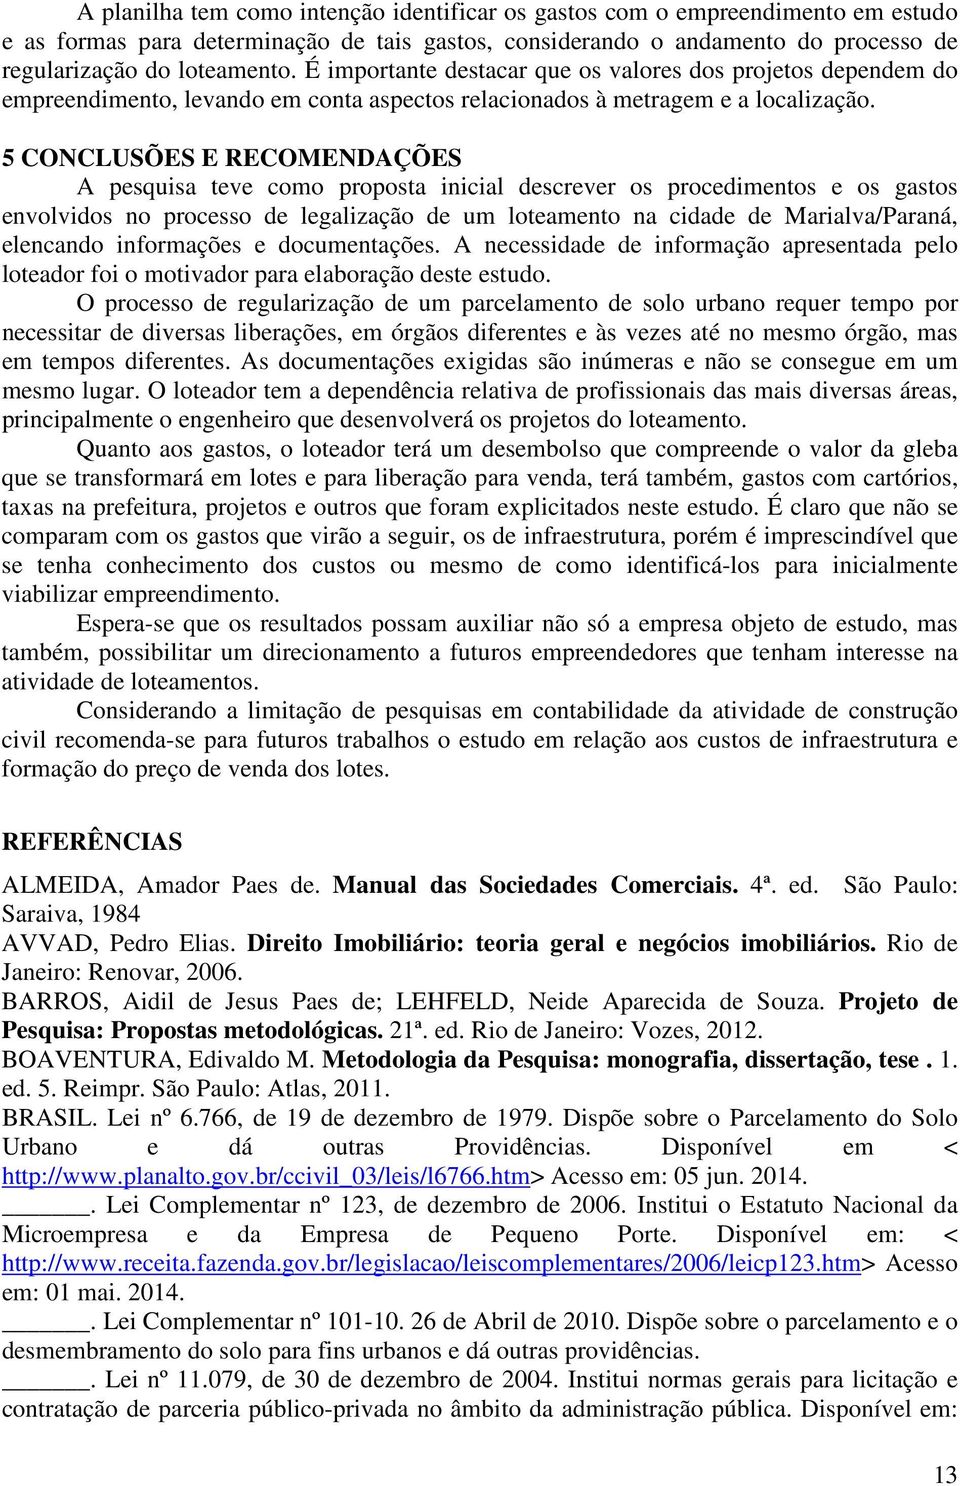 5 CONCLUSÕES E RECOMENDAÇÕES A pesquisa teve como proposta inicial descrever os procedimentos e os gastos envolvidos no processo de legalização de um loteamento na cidade de Marialva/Paraná,